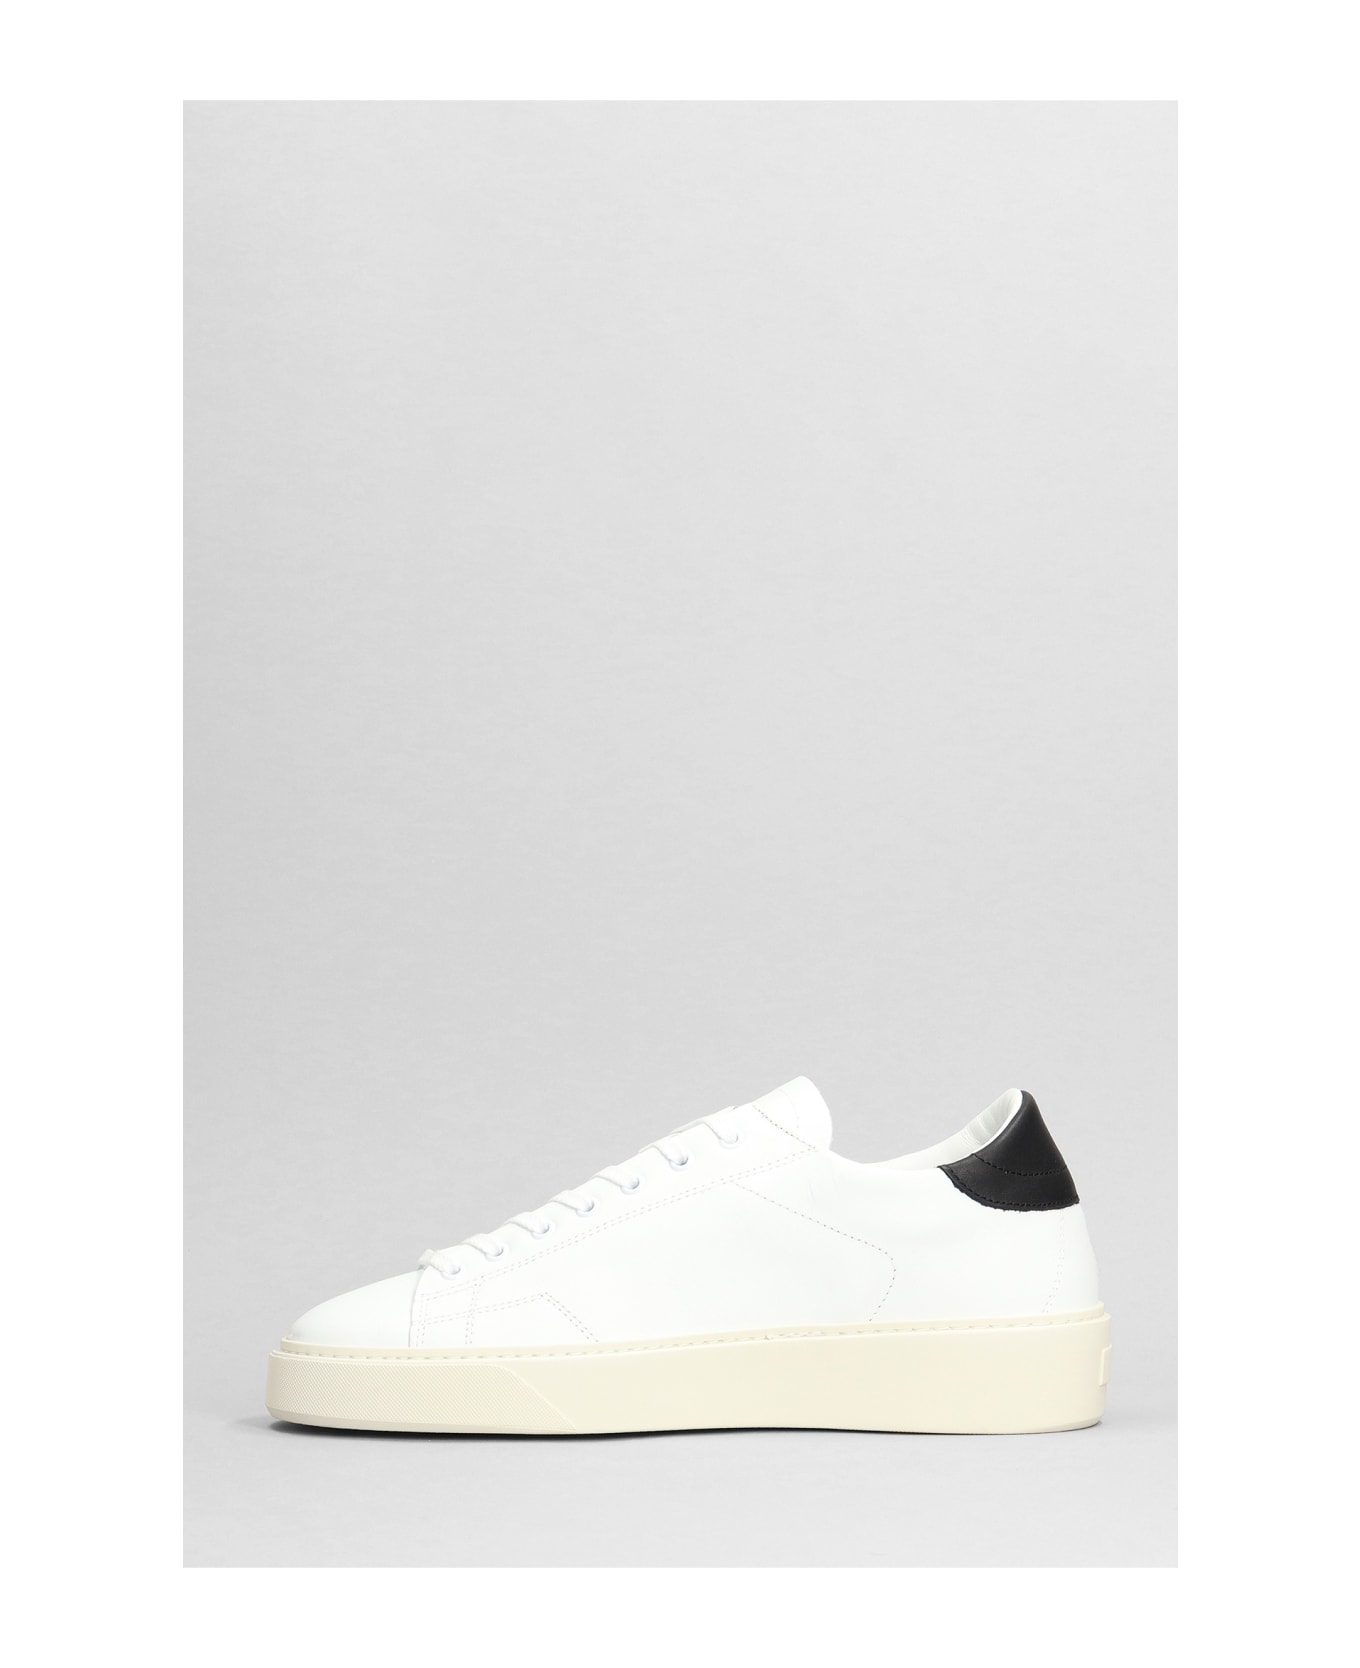 D.A.T.E. Levante Sneakers In White Leather D.A.T.E. - WHITE/BLACK